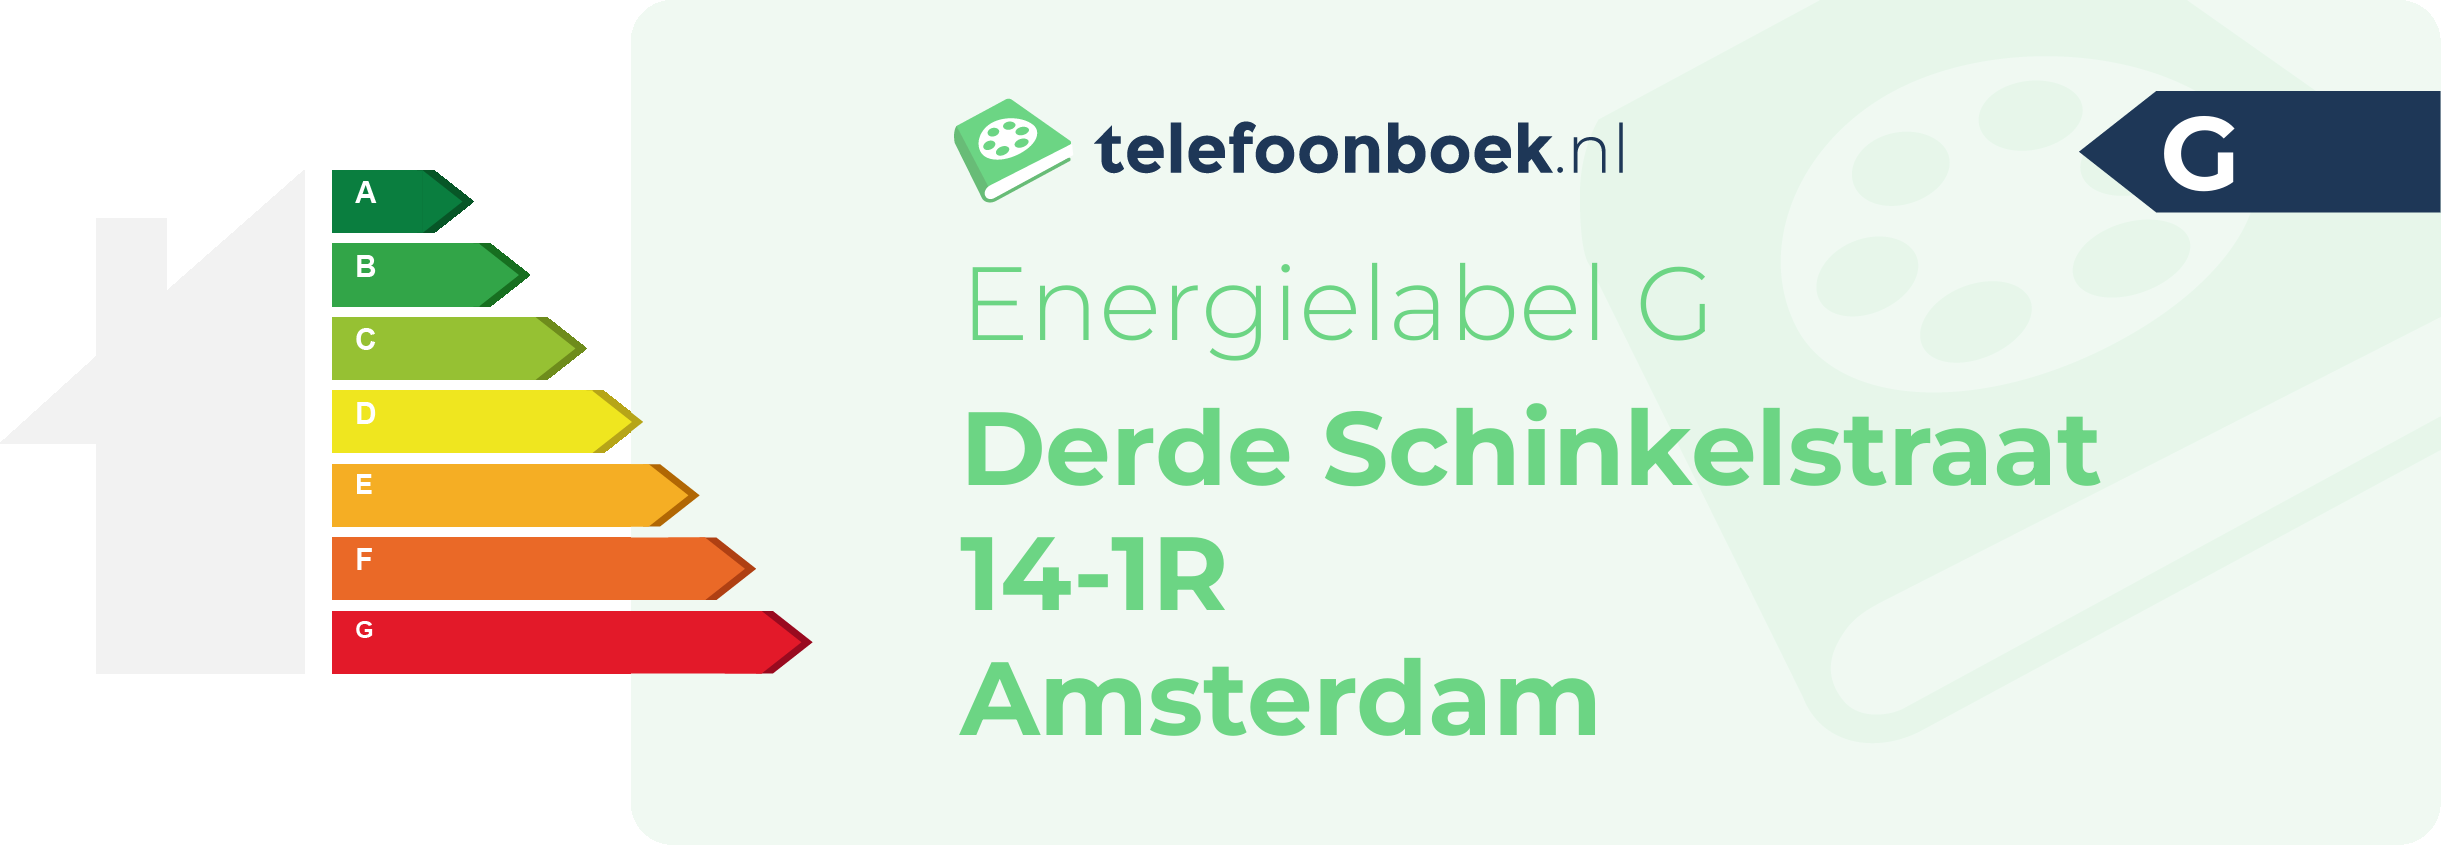 Energielabel Derde Schinkelstraat 14-1R Amsterdam